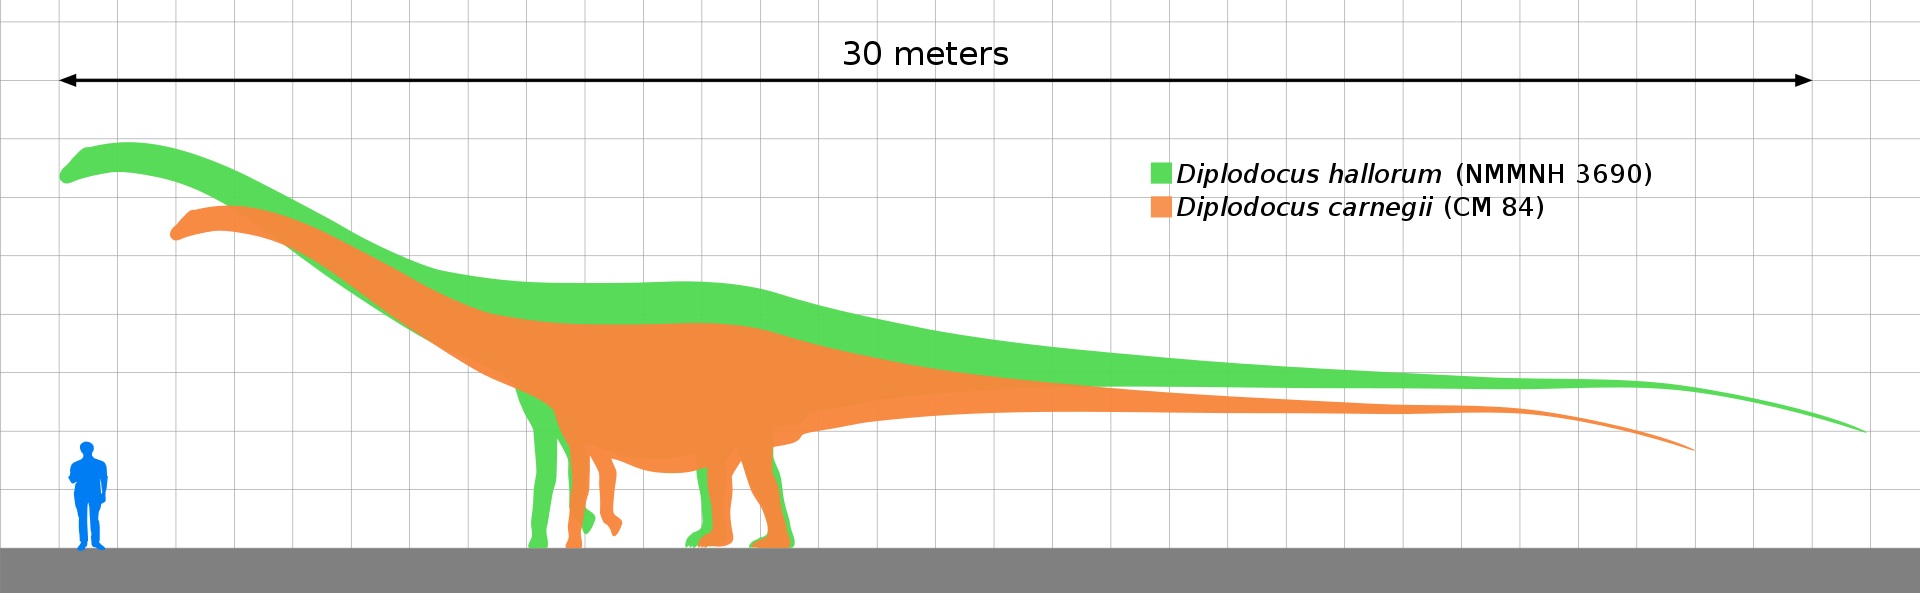 Velikostní porovnání druhů Diplodocus carnegii (oranžová silueta) a Diplodocus hallorum (zelená silueta) ukazuje, že „seismosaurus“ ve skutečnosti nebyl výrazně větší než jeho příbuzní z jiných druhů rodu Diplodocus. Byl nicméně největším dnes známým